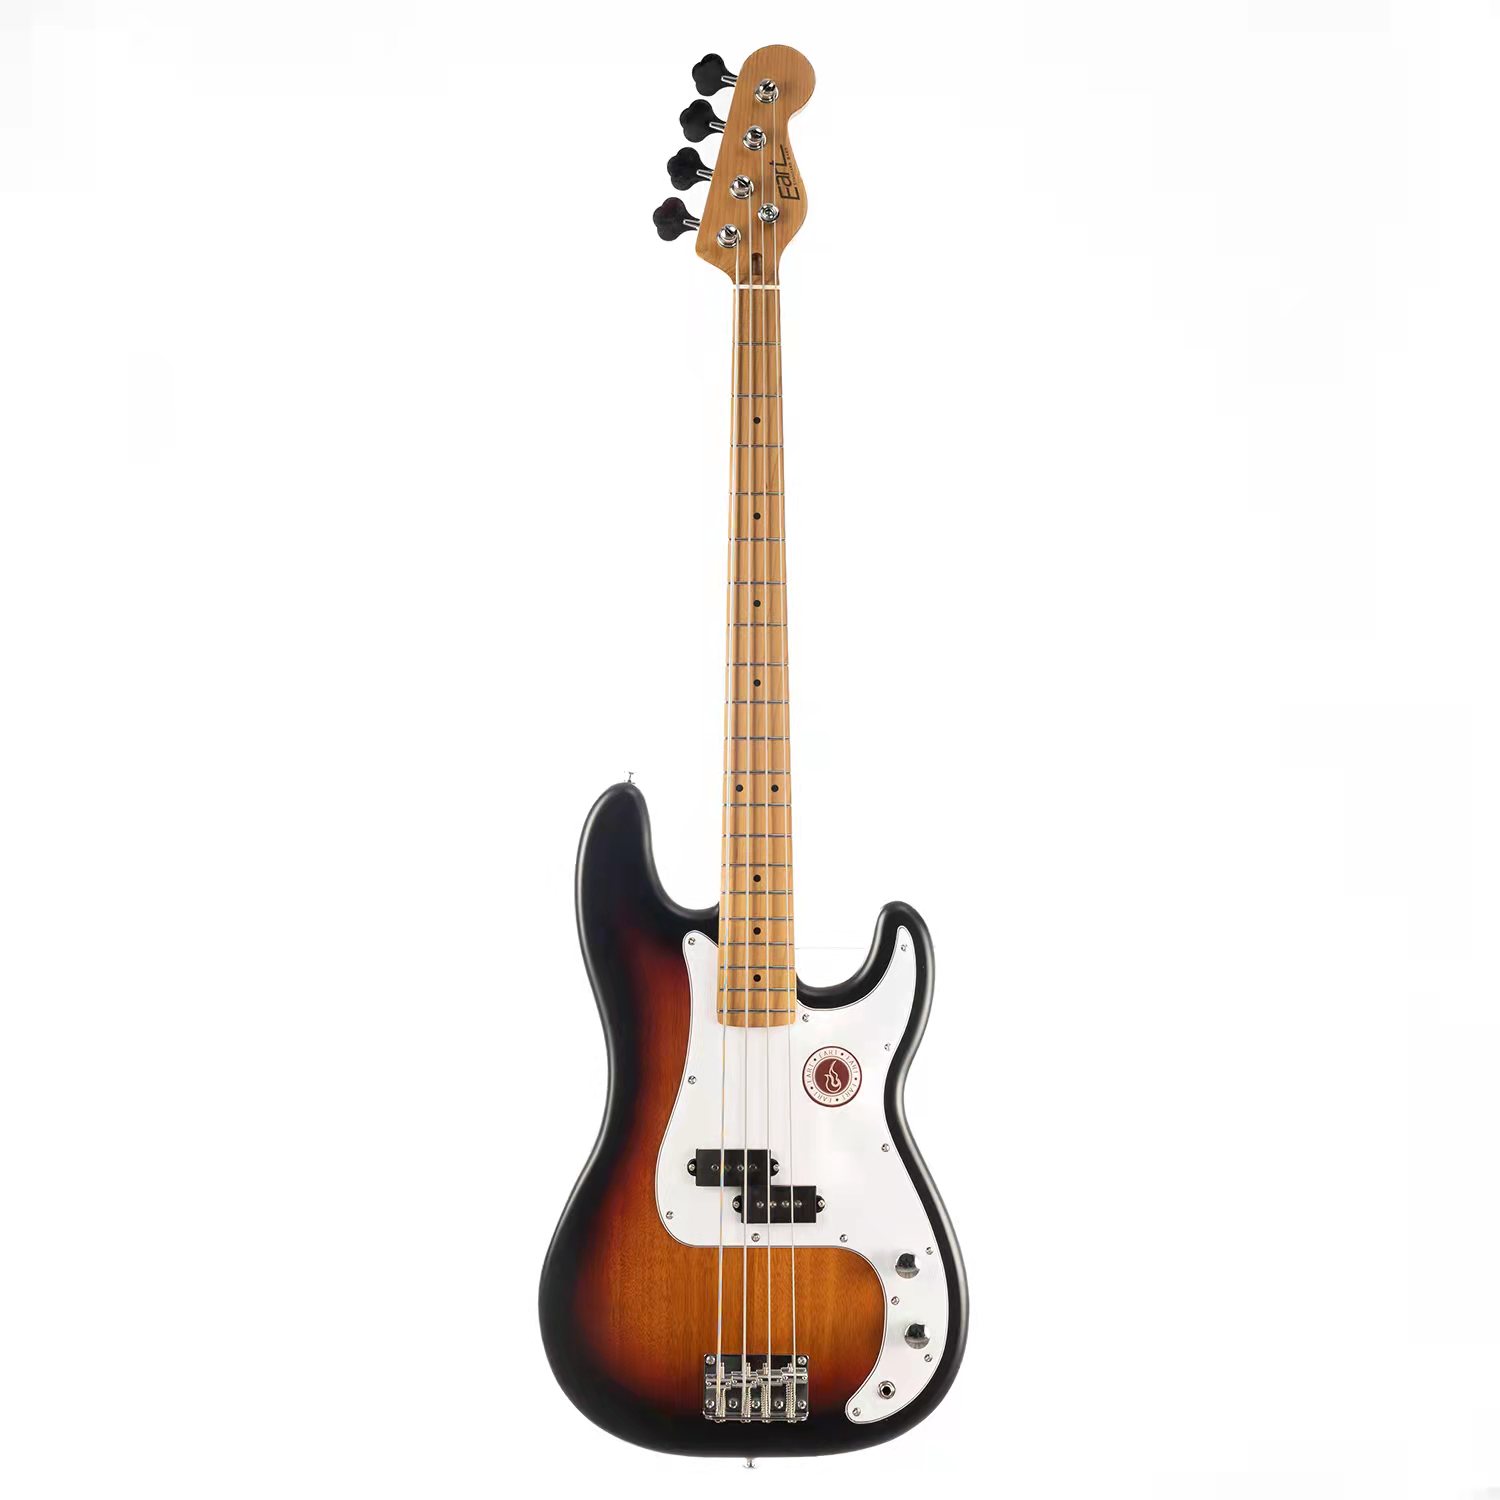 גיטרה בס חשמלית Eart Guitars B-10 Roasted Maple Neck Mahogany Body 4 Strings Bass Guitar color Sunburst